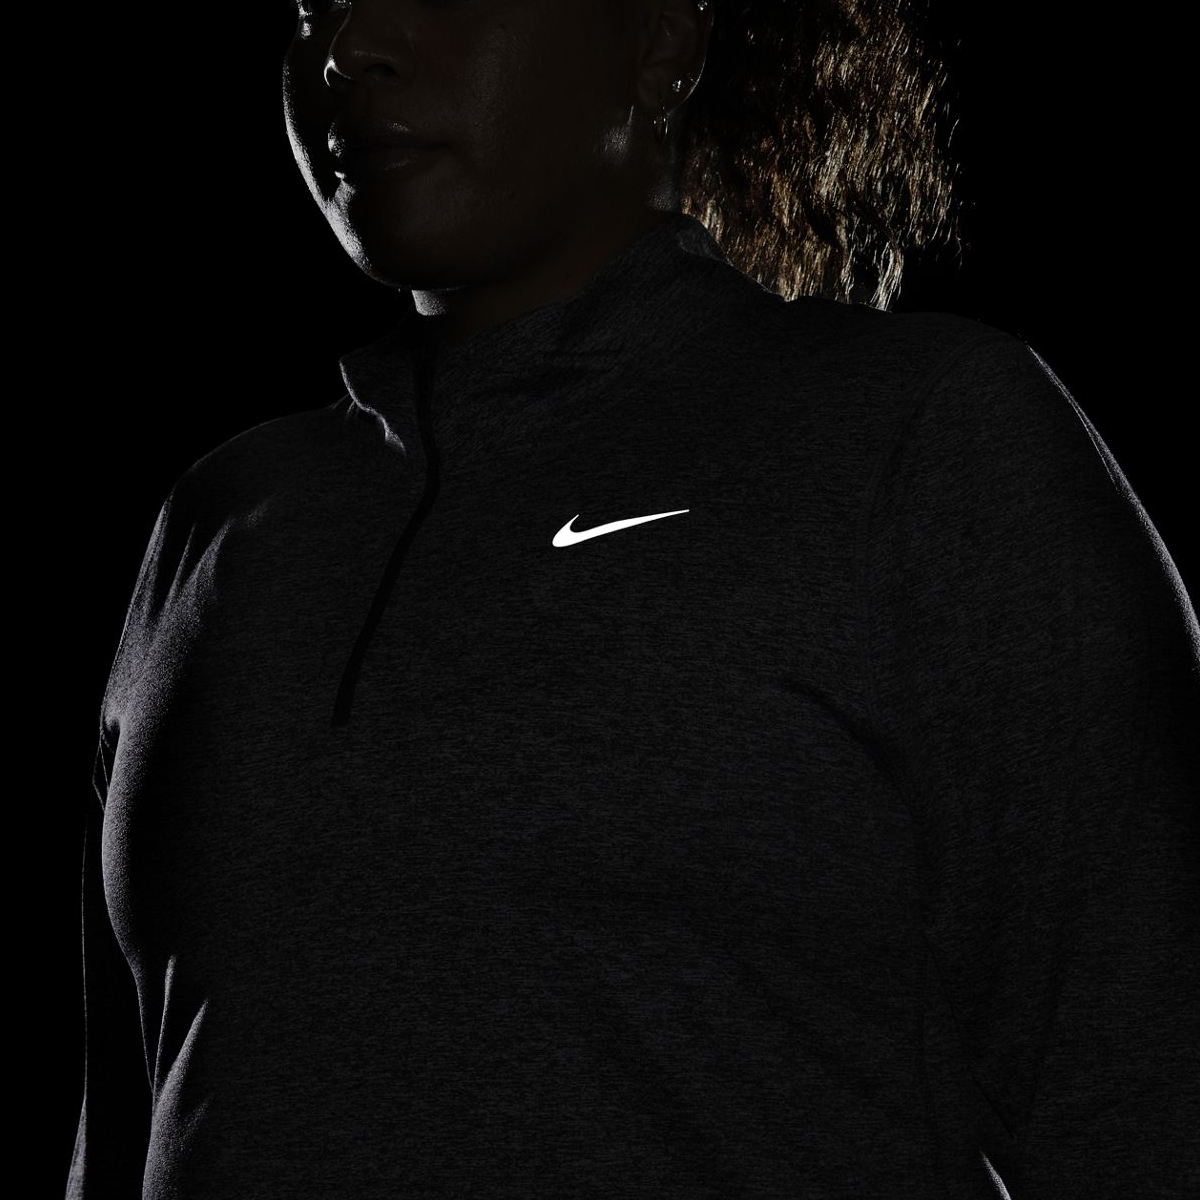 Nike Element Jacket, , large image number null